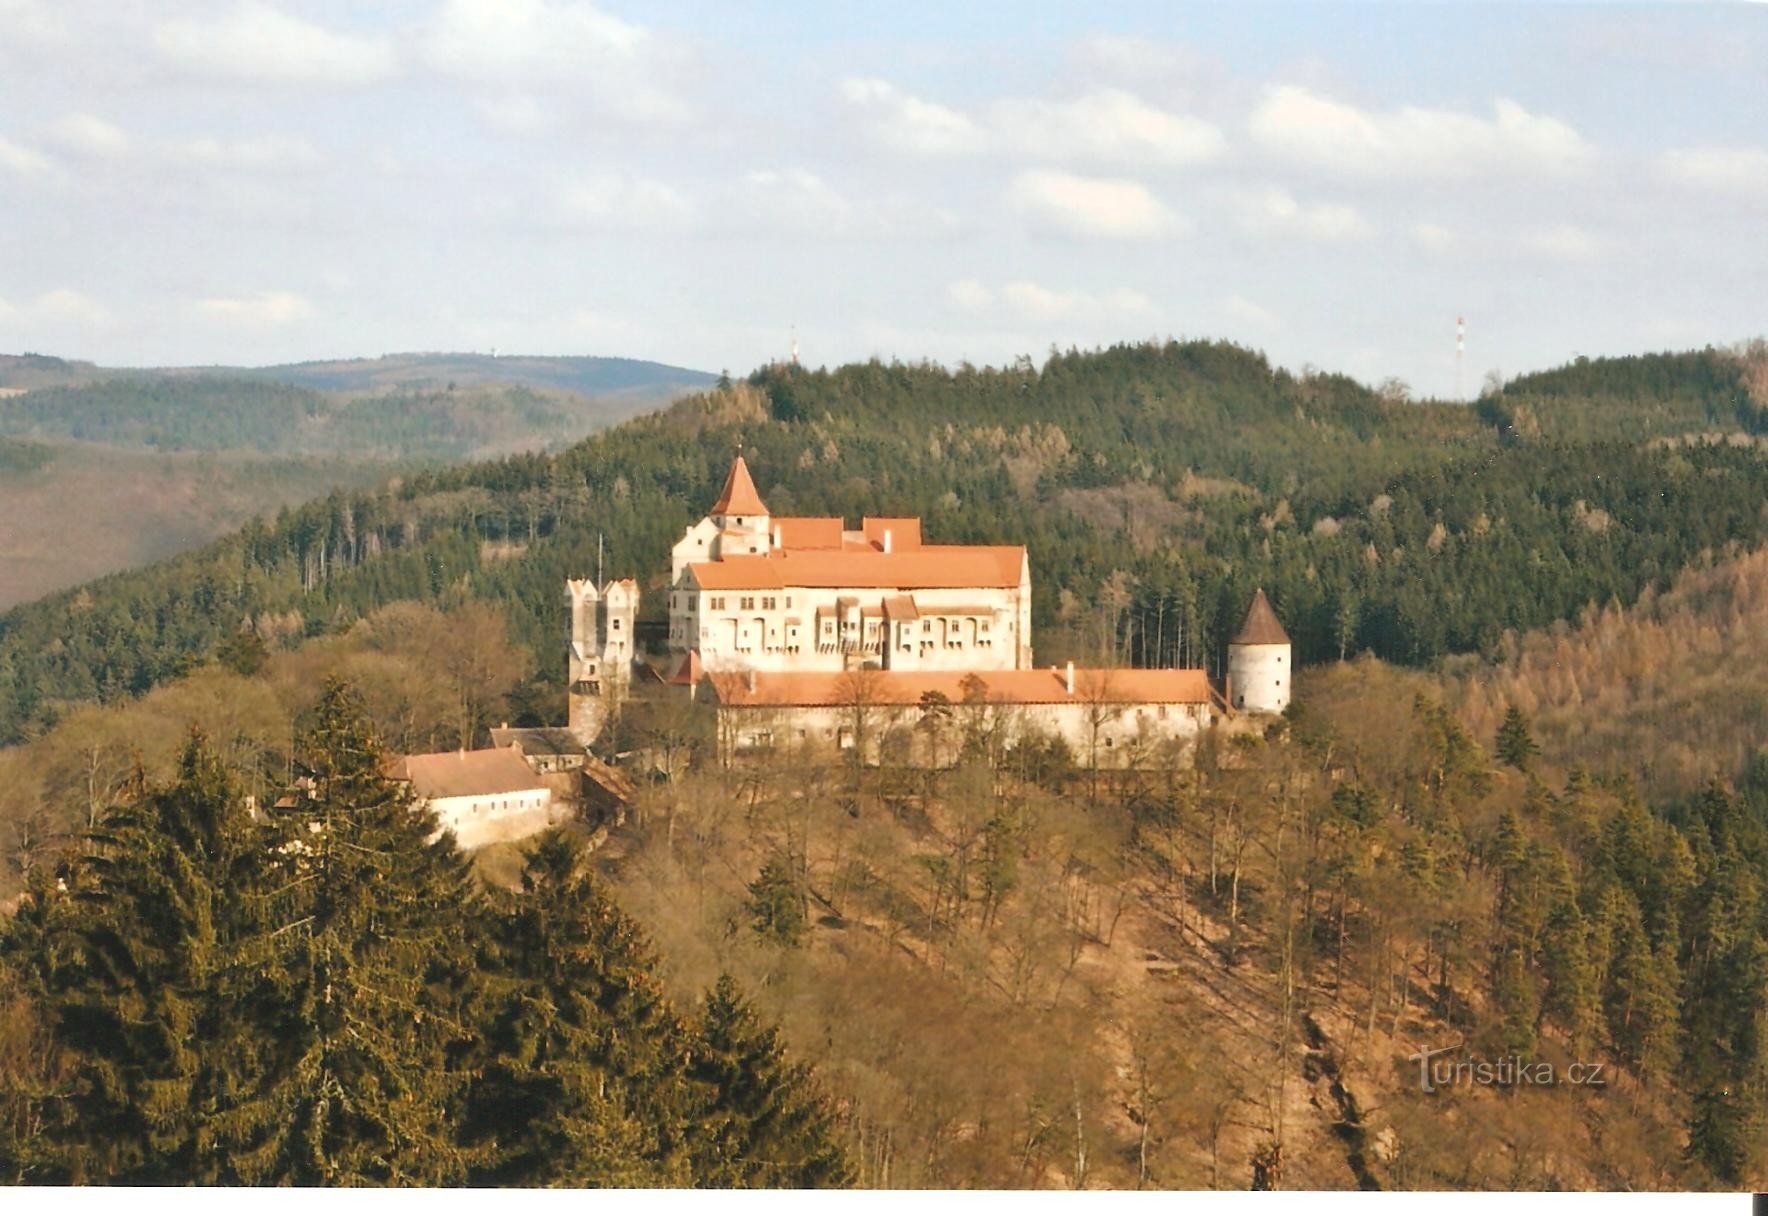 Marenčino loubí - utsikt över slottet Pernštejn på senhösten 2008